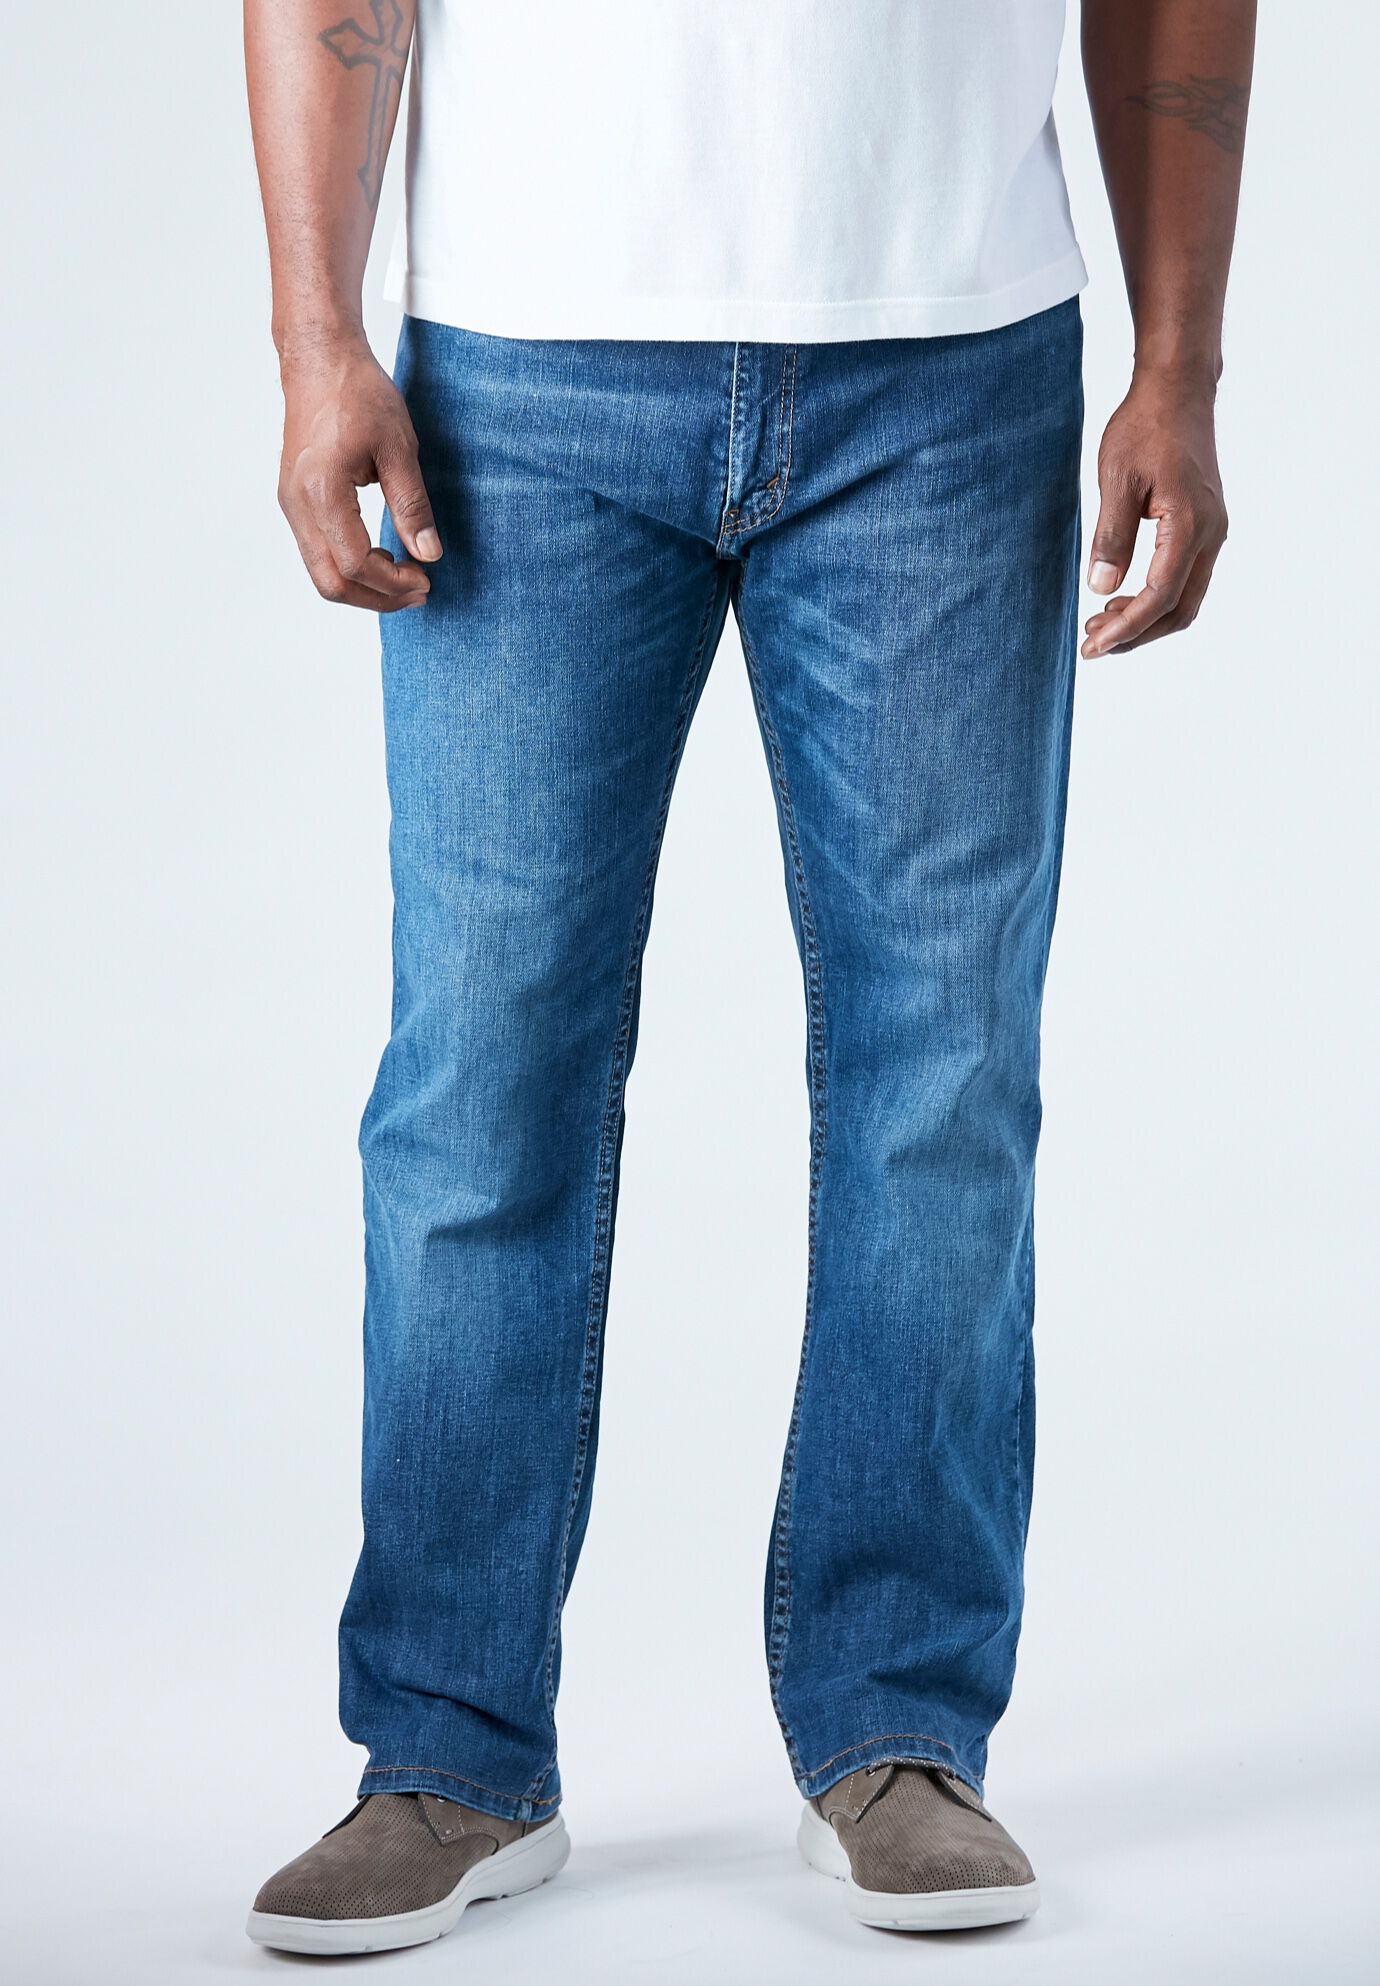 levi's 559 jeans